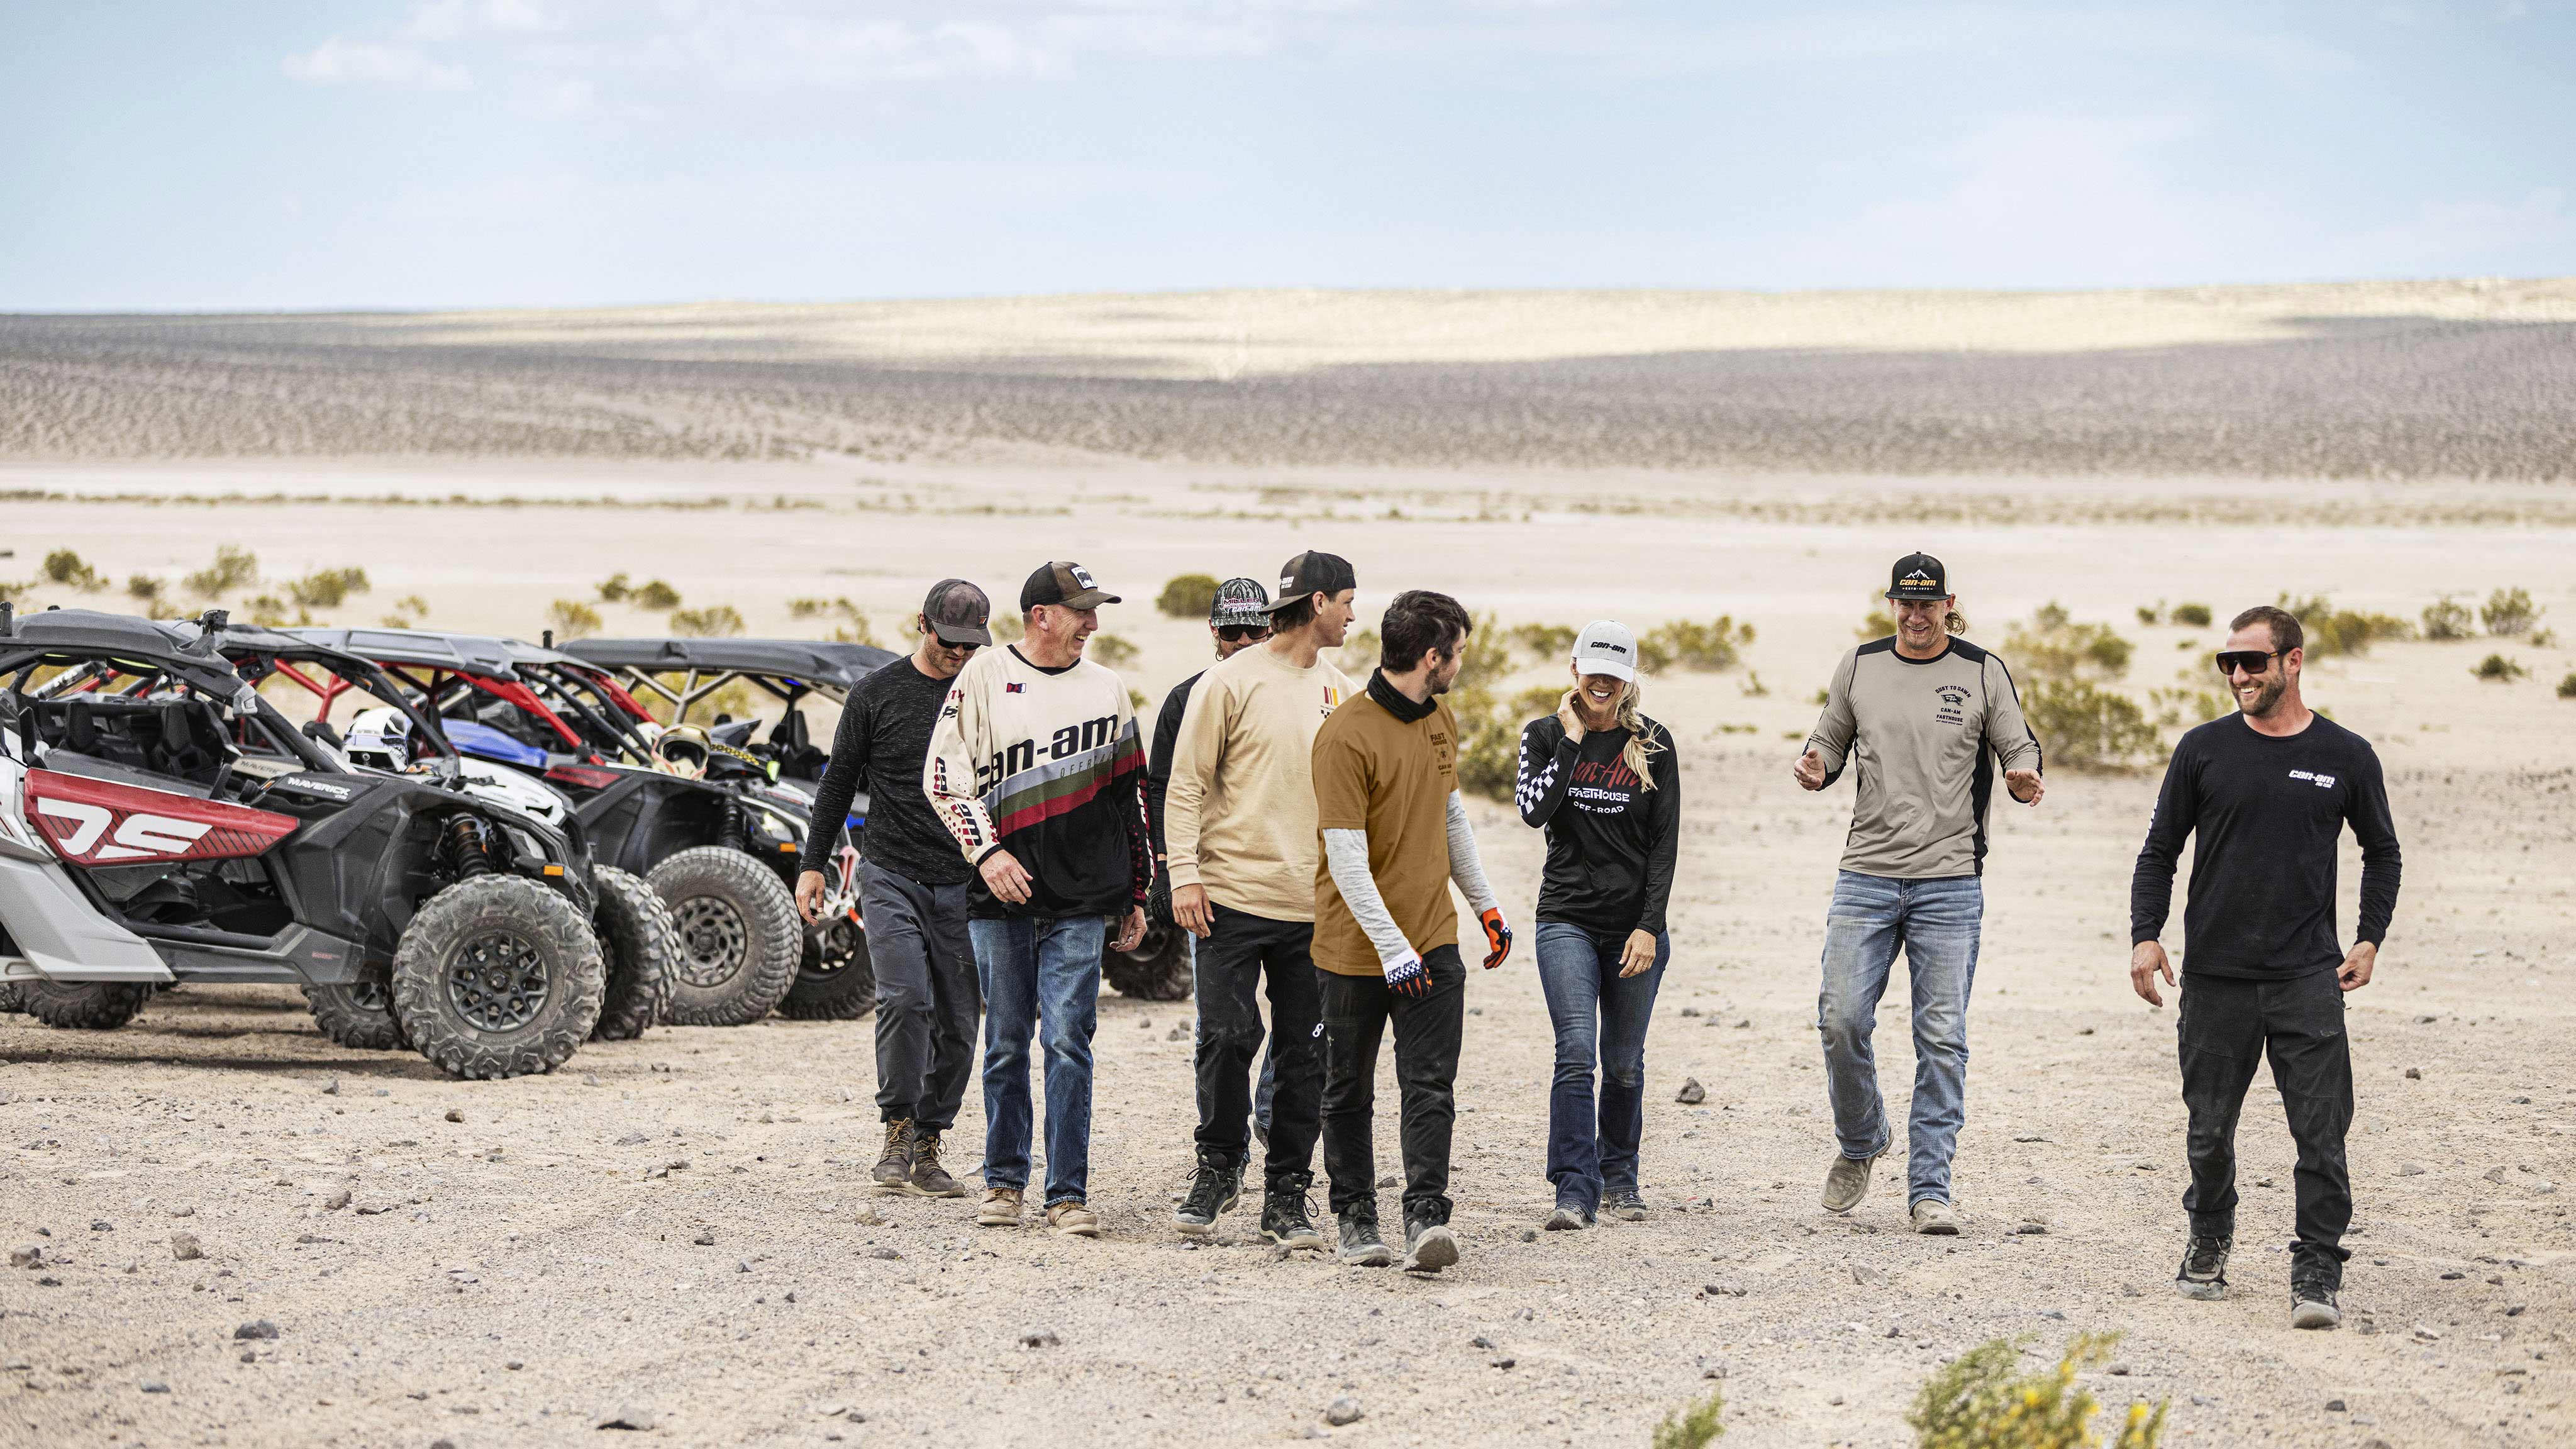 Ocho pilotos caminando hacia delante en el desierto, con tres vehículos Can-Am Maverick al fondo